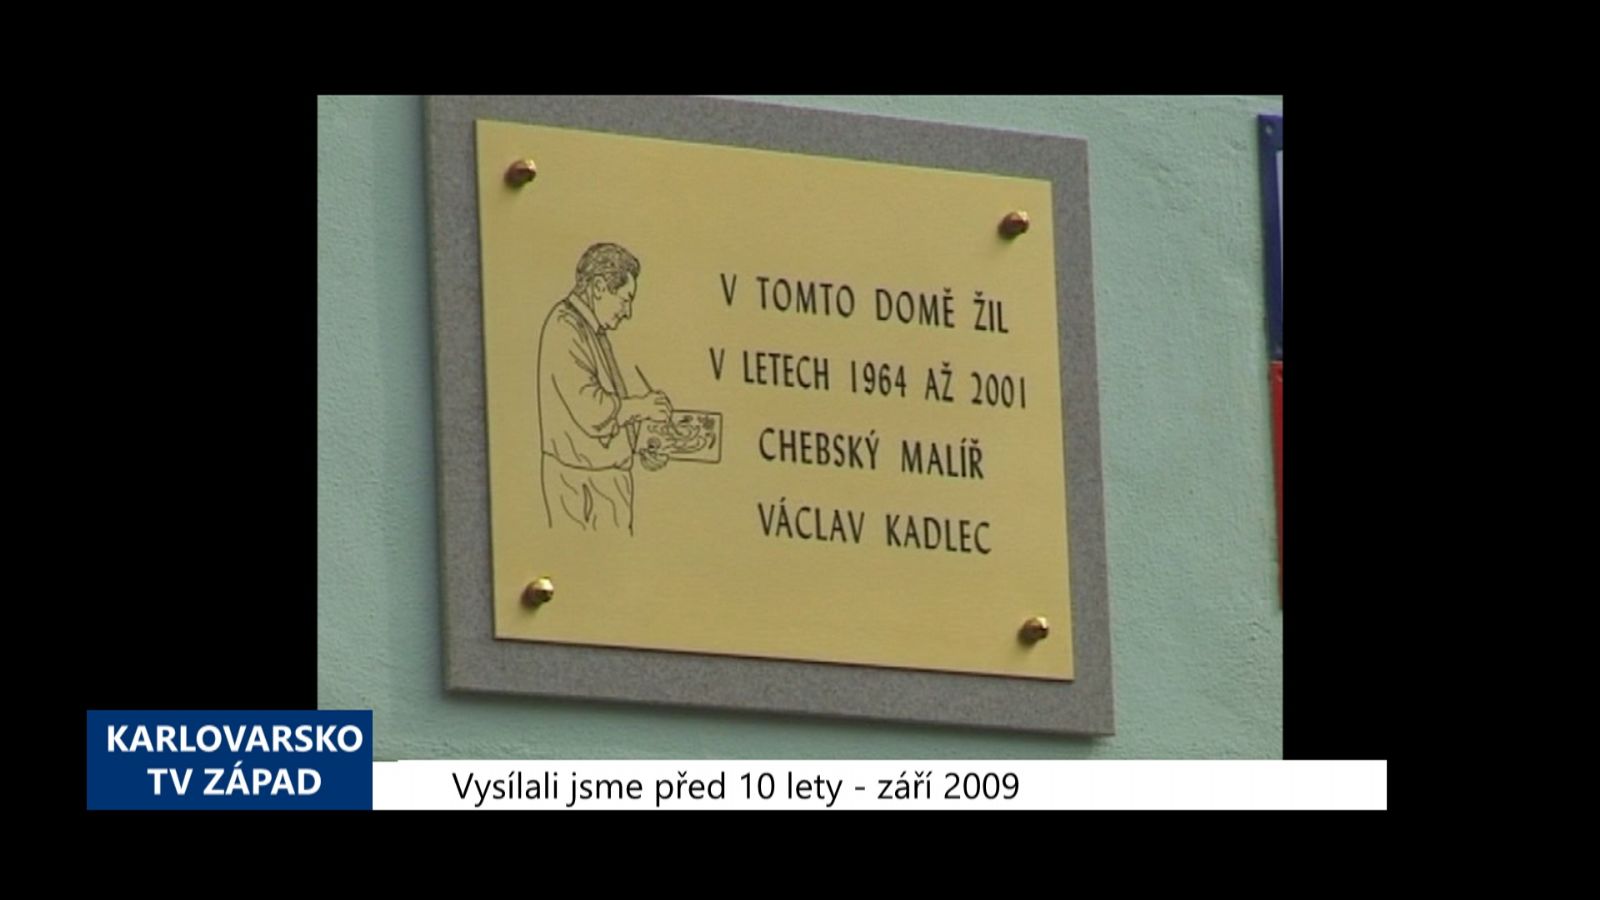 2009 – Cheb: Odhalení desky chebskému malíři Kadlecovi (3858) (TV Západ)	